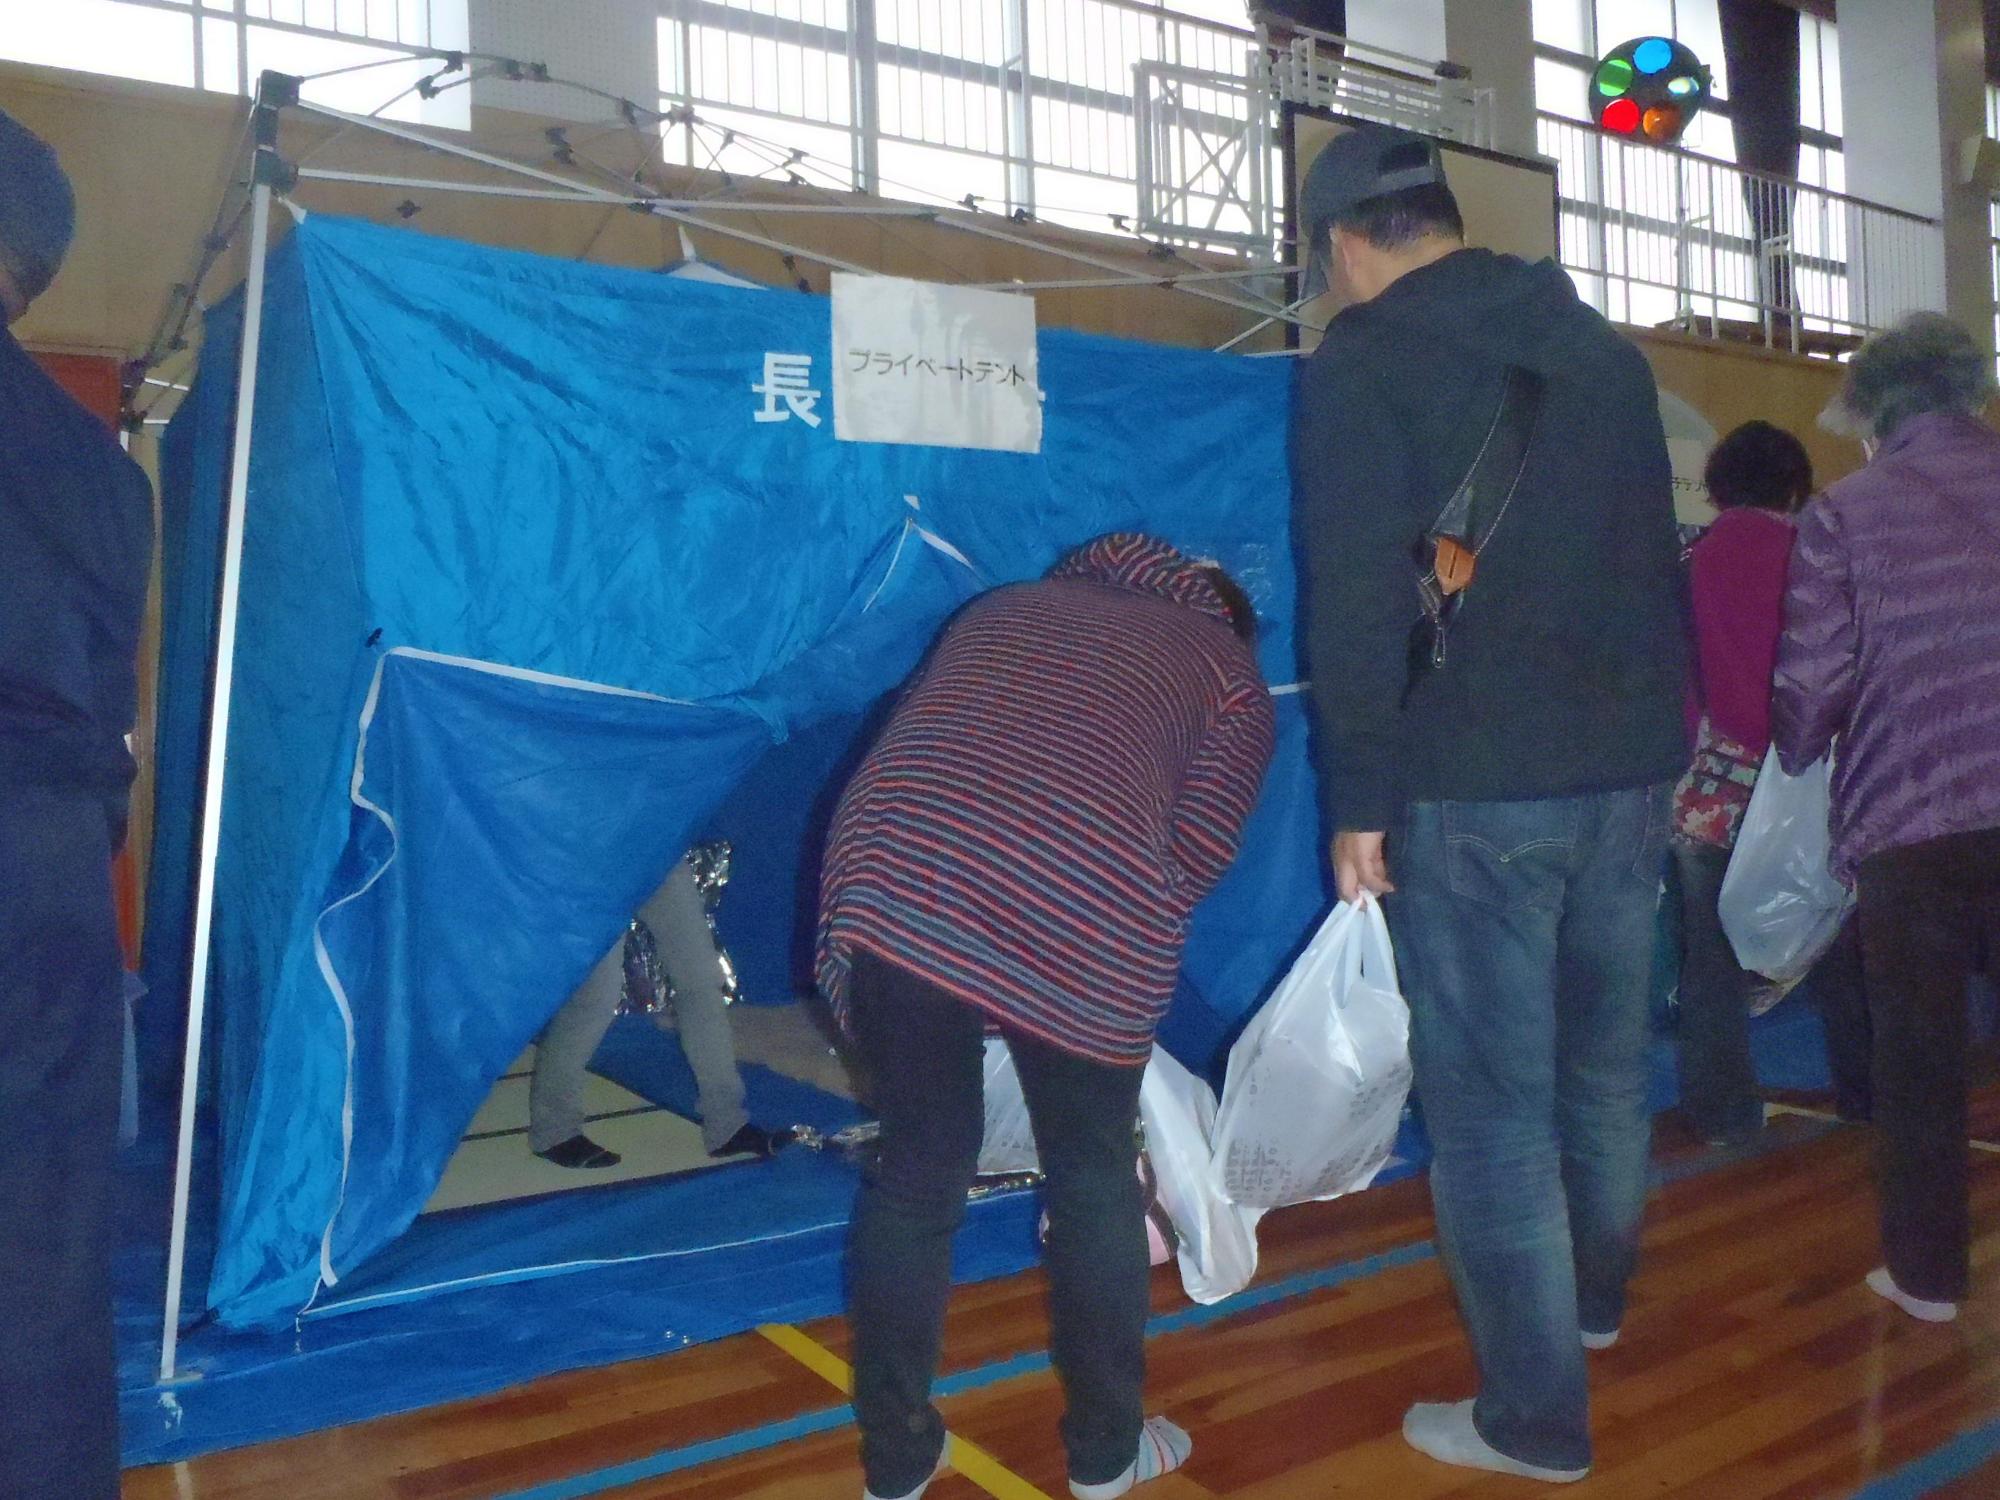 体育館に設置された青いプライベートテント(避難所)に入ろうとする参加者たちの写真